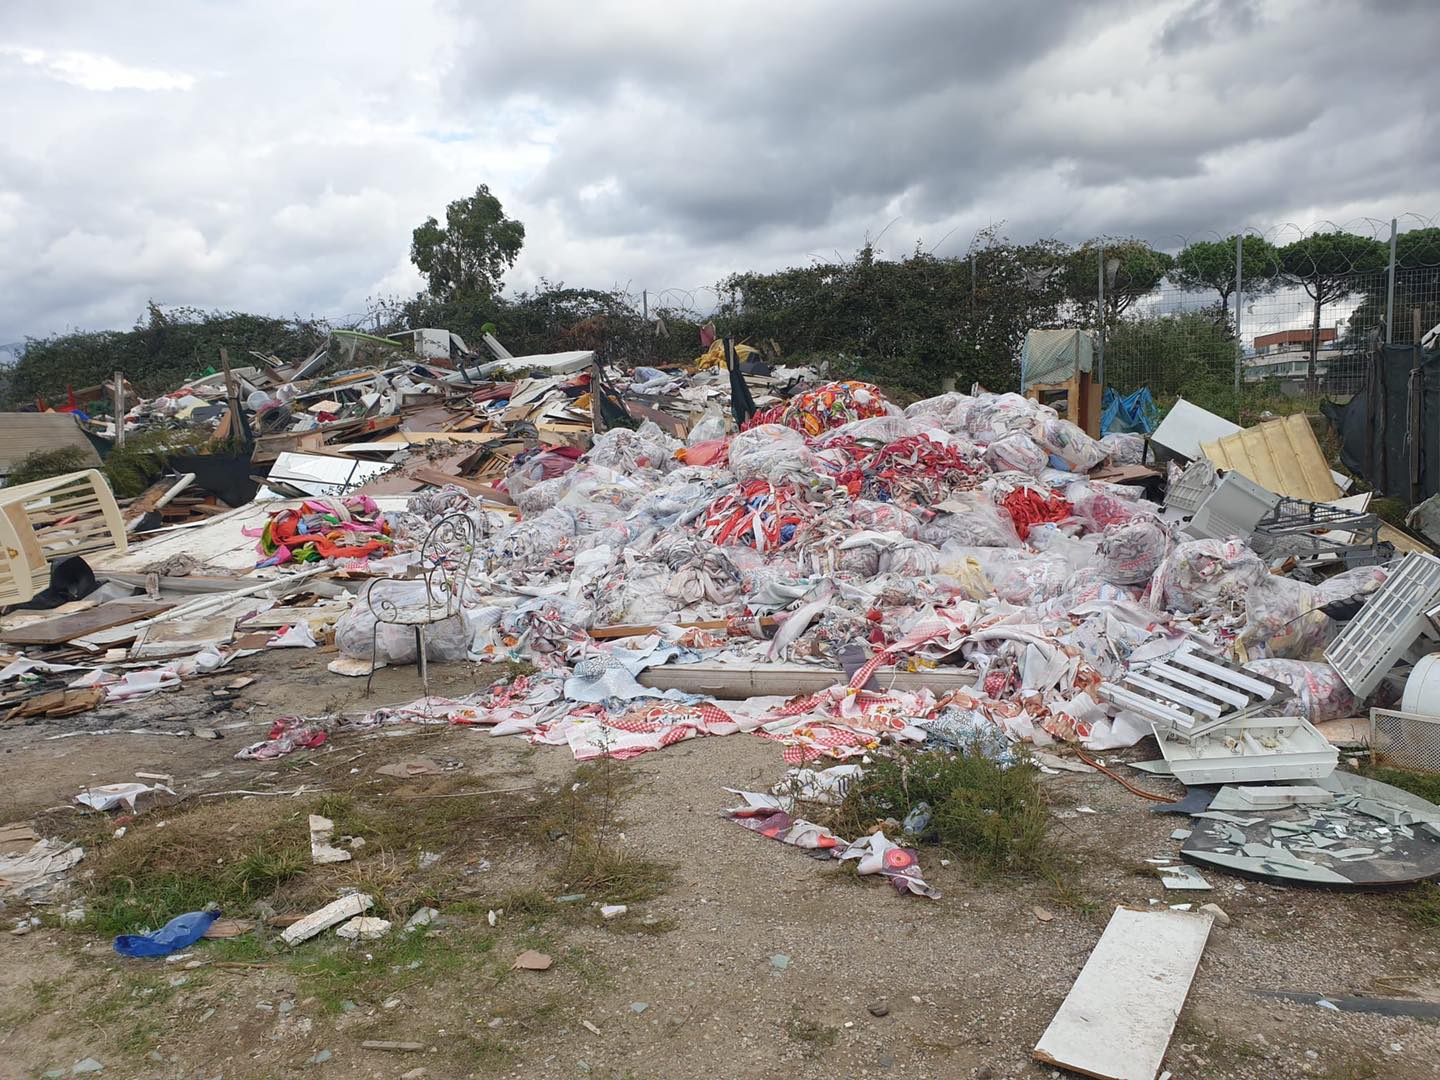 Qualiano rimuove i rifiuti dal campo rom: ‘Intervento per evitare roghi tossici’